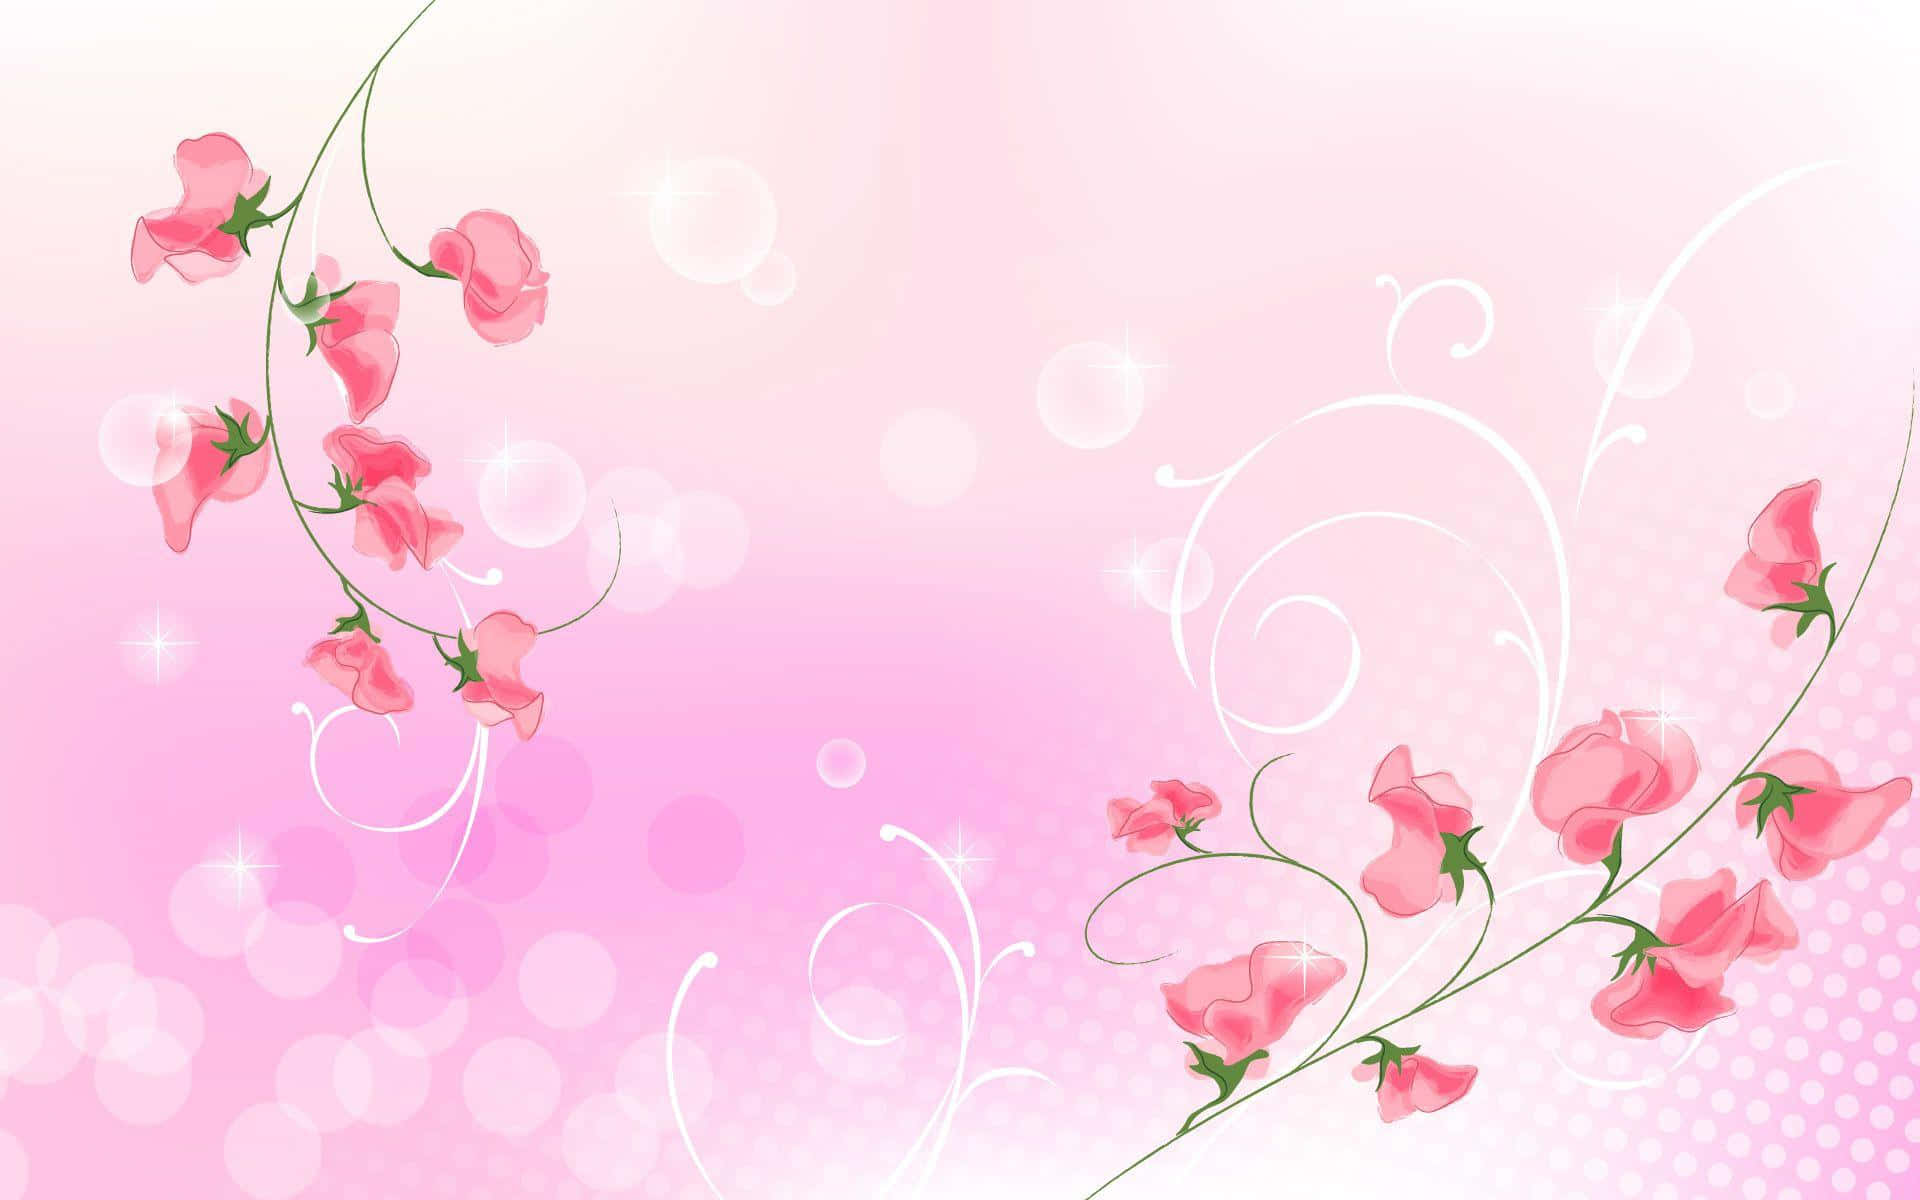 Einzartes Rosa Blumenmuster Als Hintergrund, Perfekt Um Jede Wand Zu Akzentuieren.